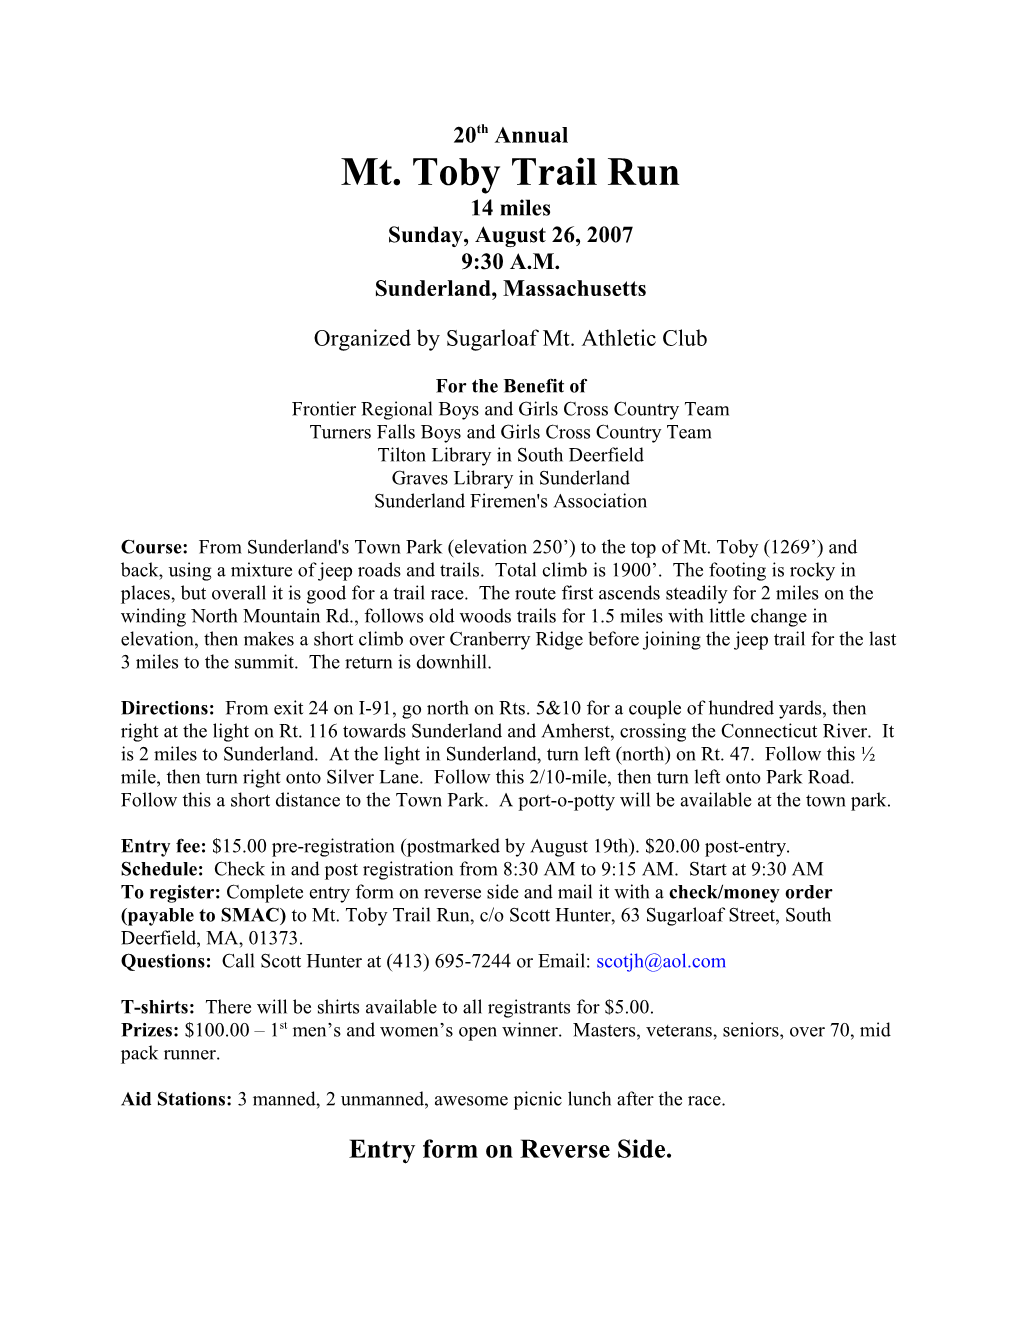 Mt. Toby Trail Run